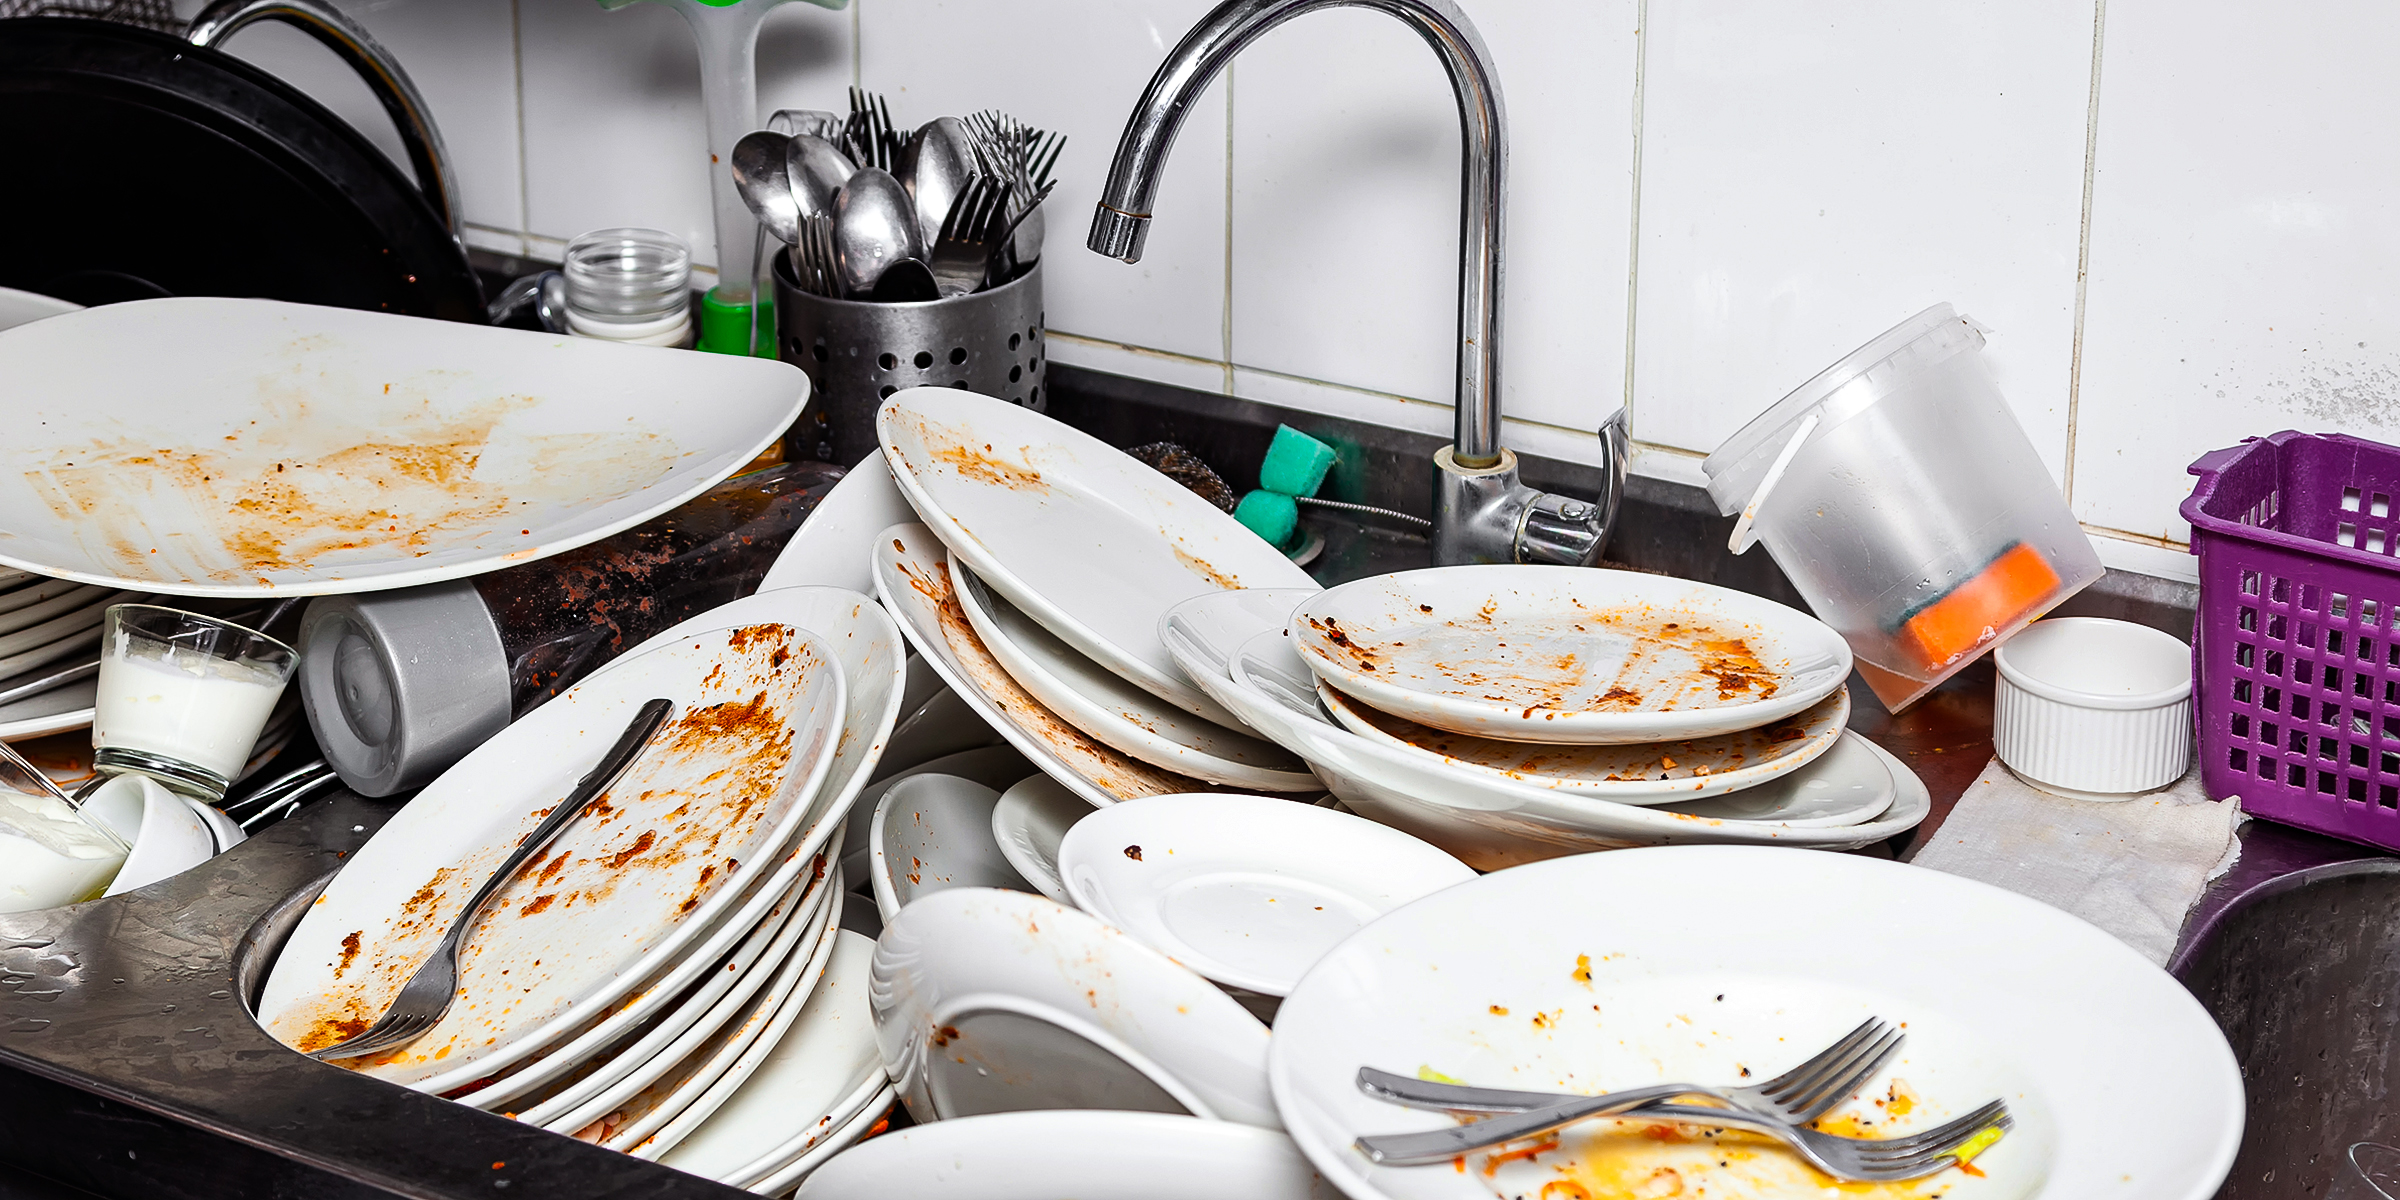 Fregadero lleno de platos | Fuente: Shutterstock